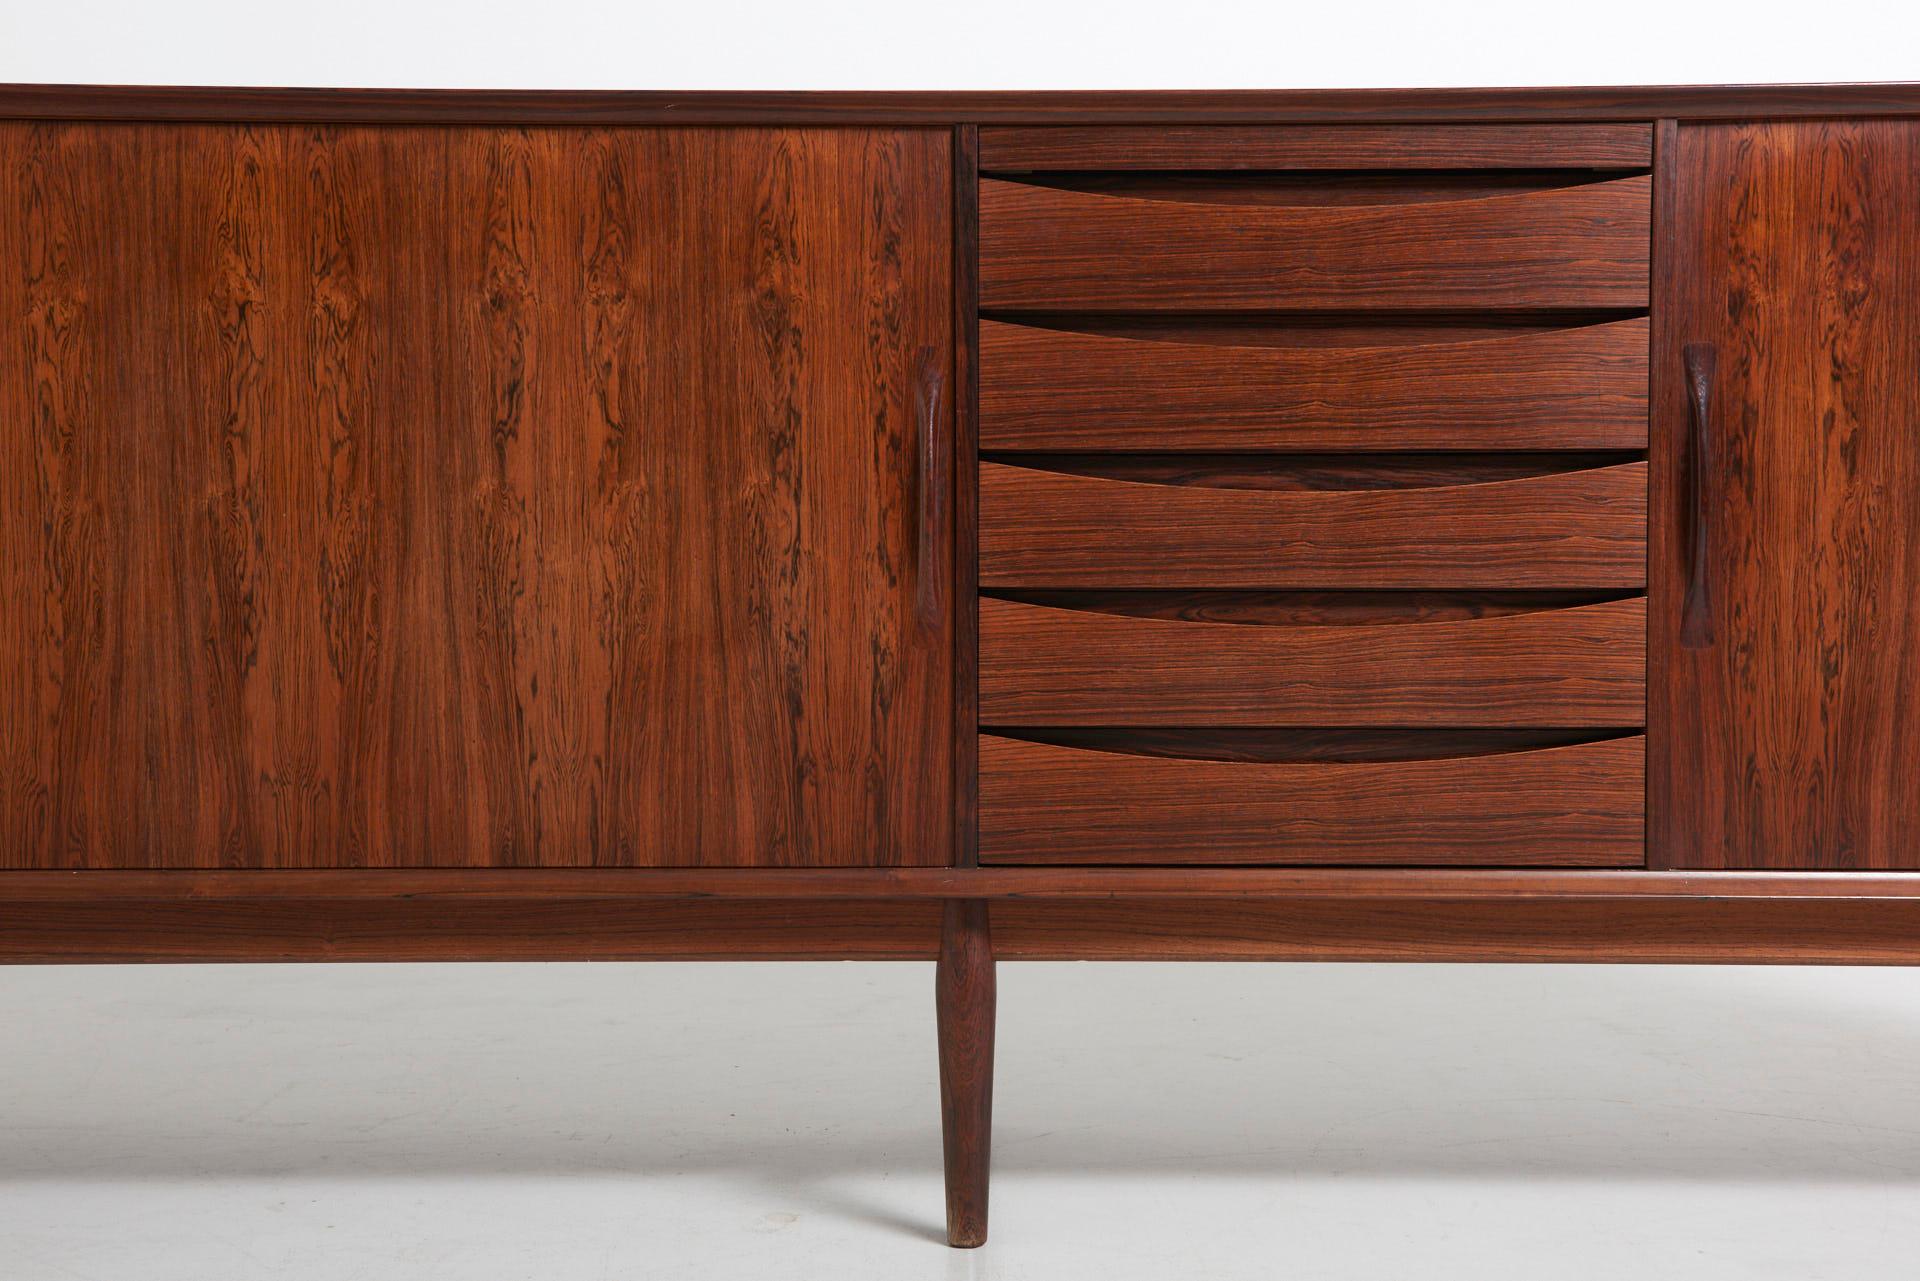 Model 76 Sideboard by Arne Vodder for Sibast Furniture (Dänisch)